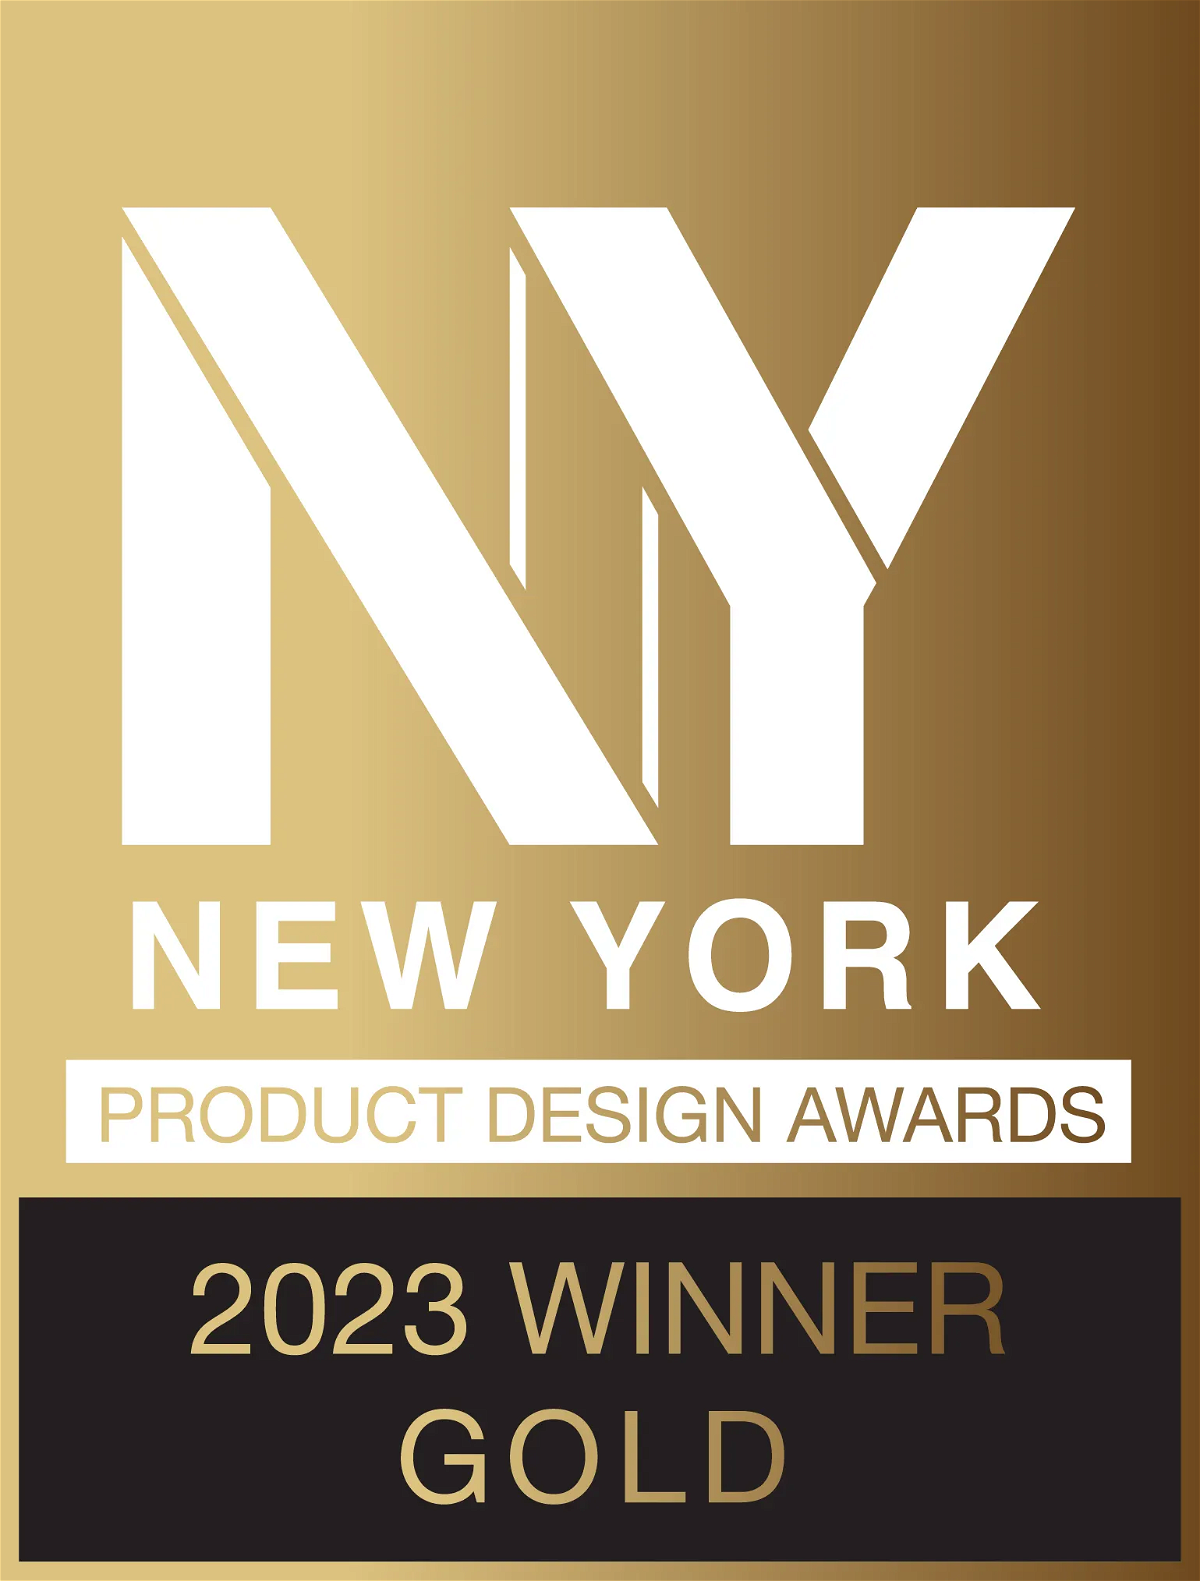 New york product design awards - Gold winner 2023